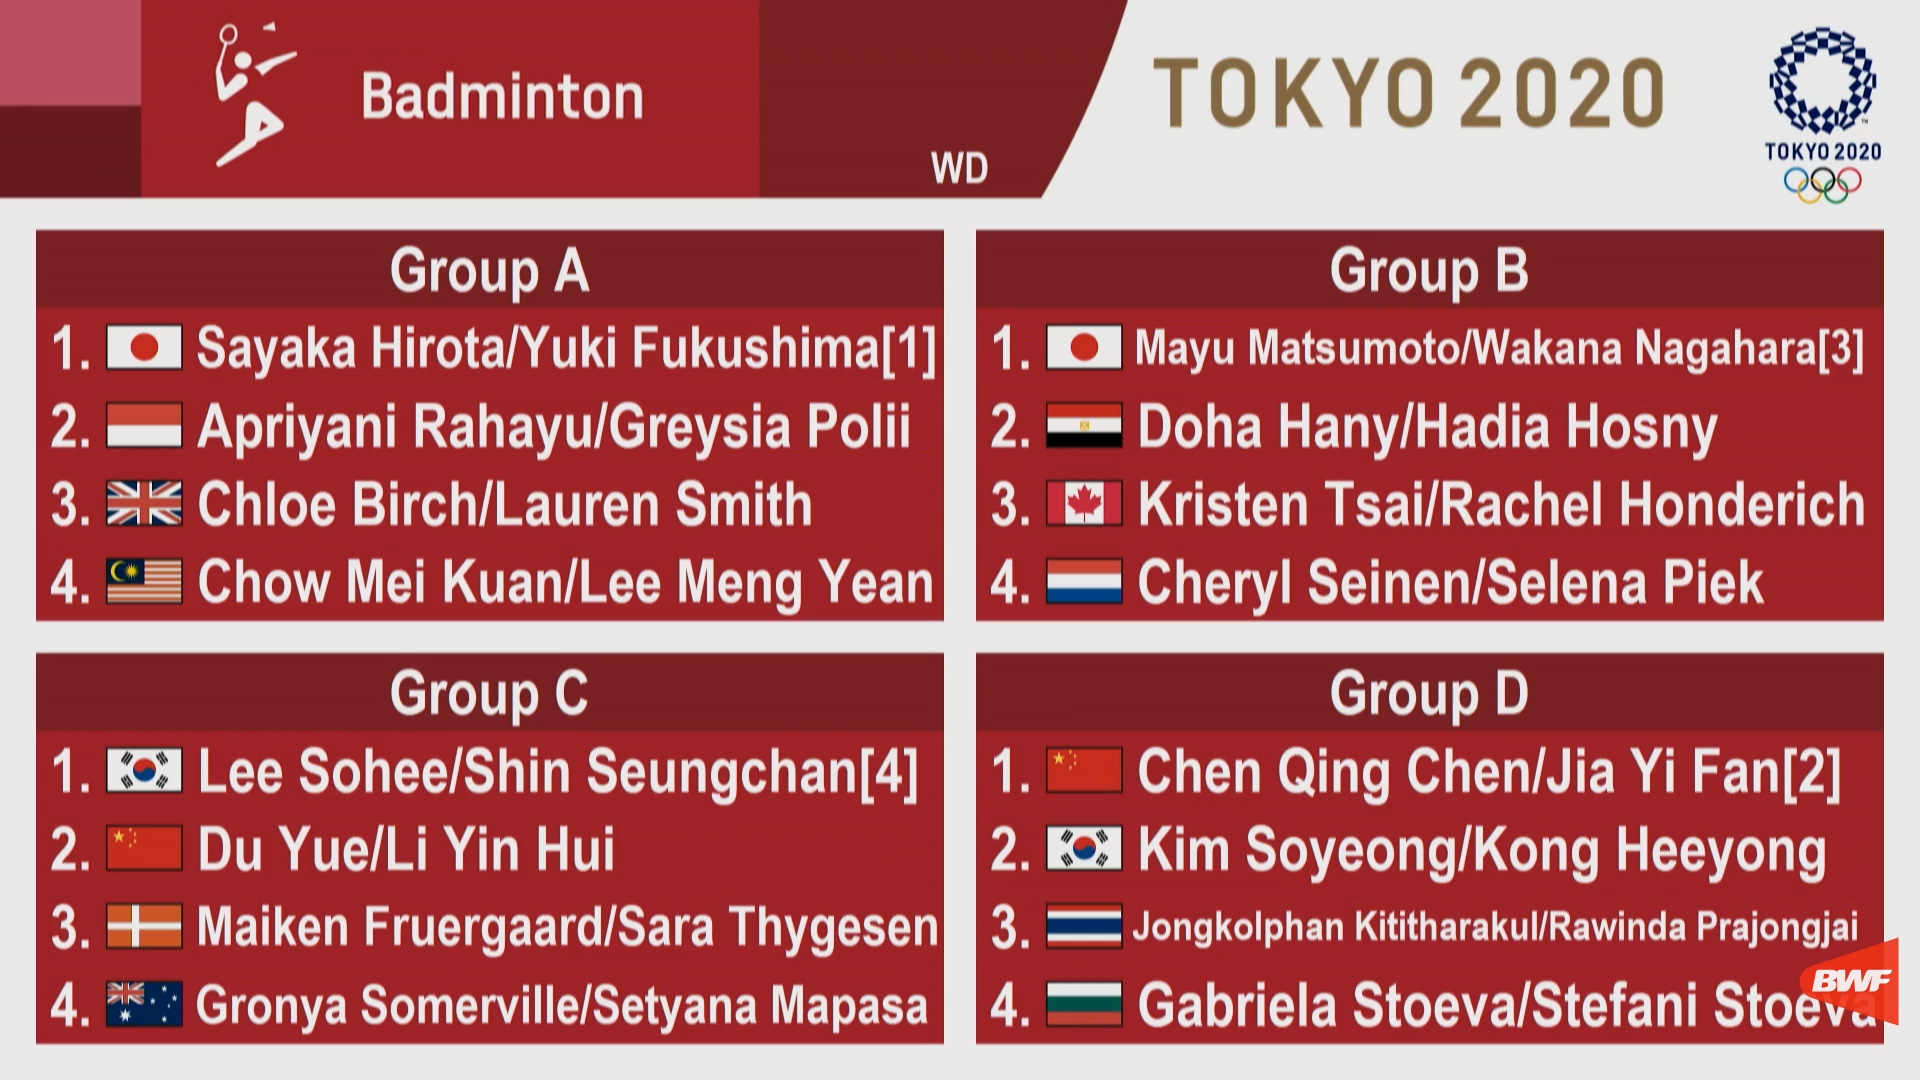 Schedule olympics badminton 2021 Tokyo 2021